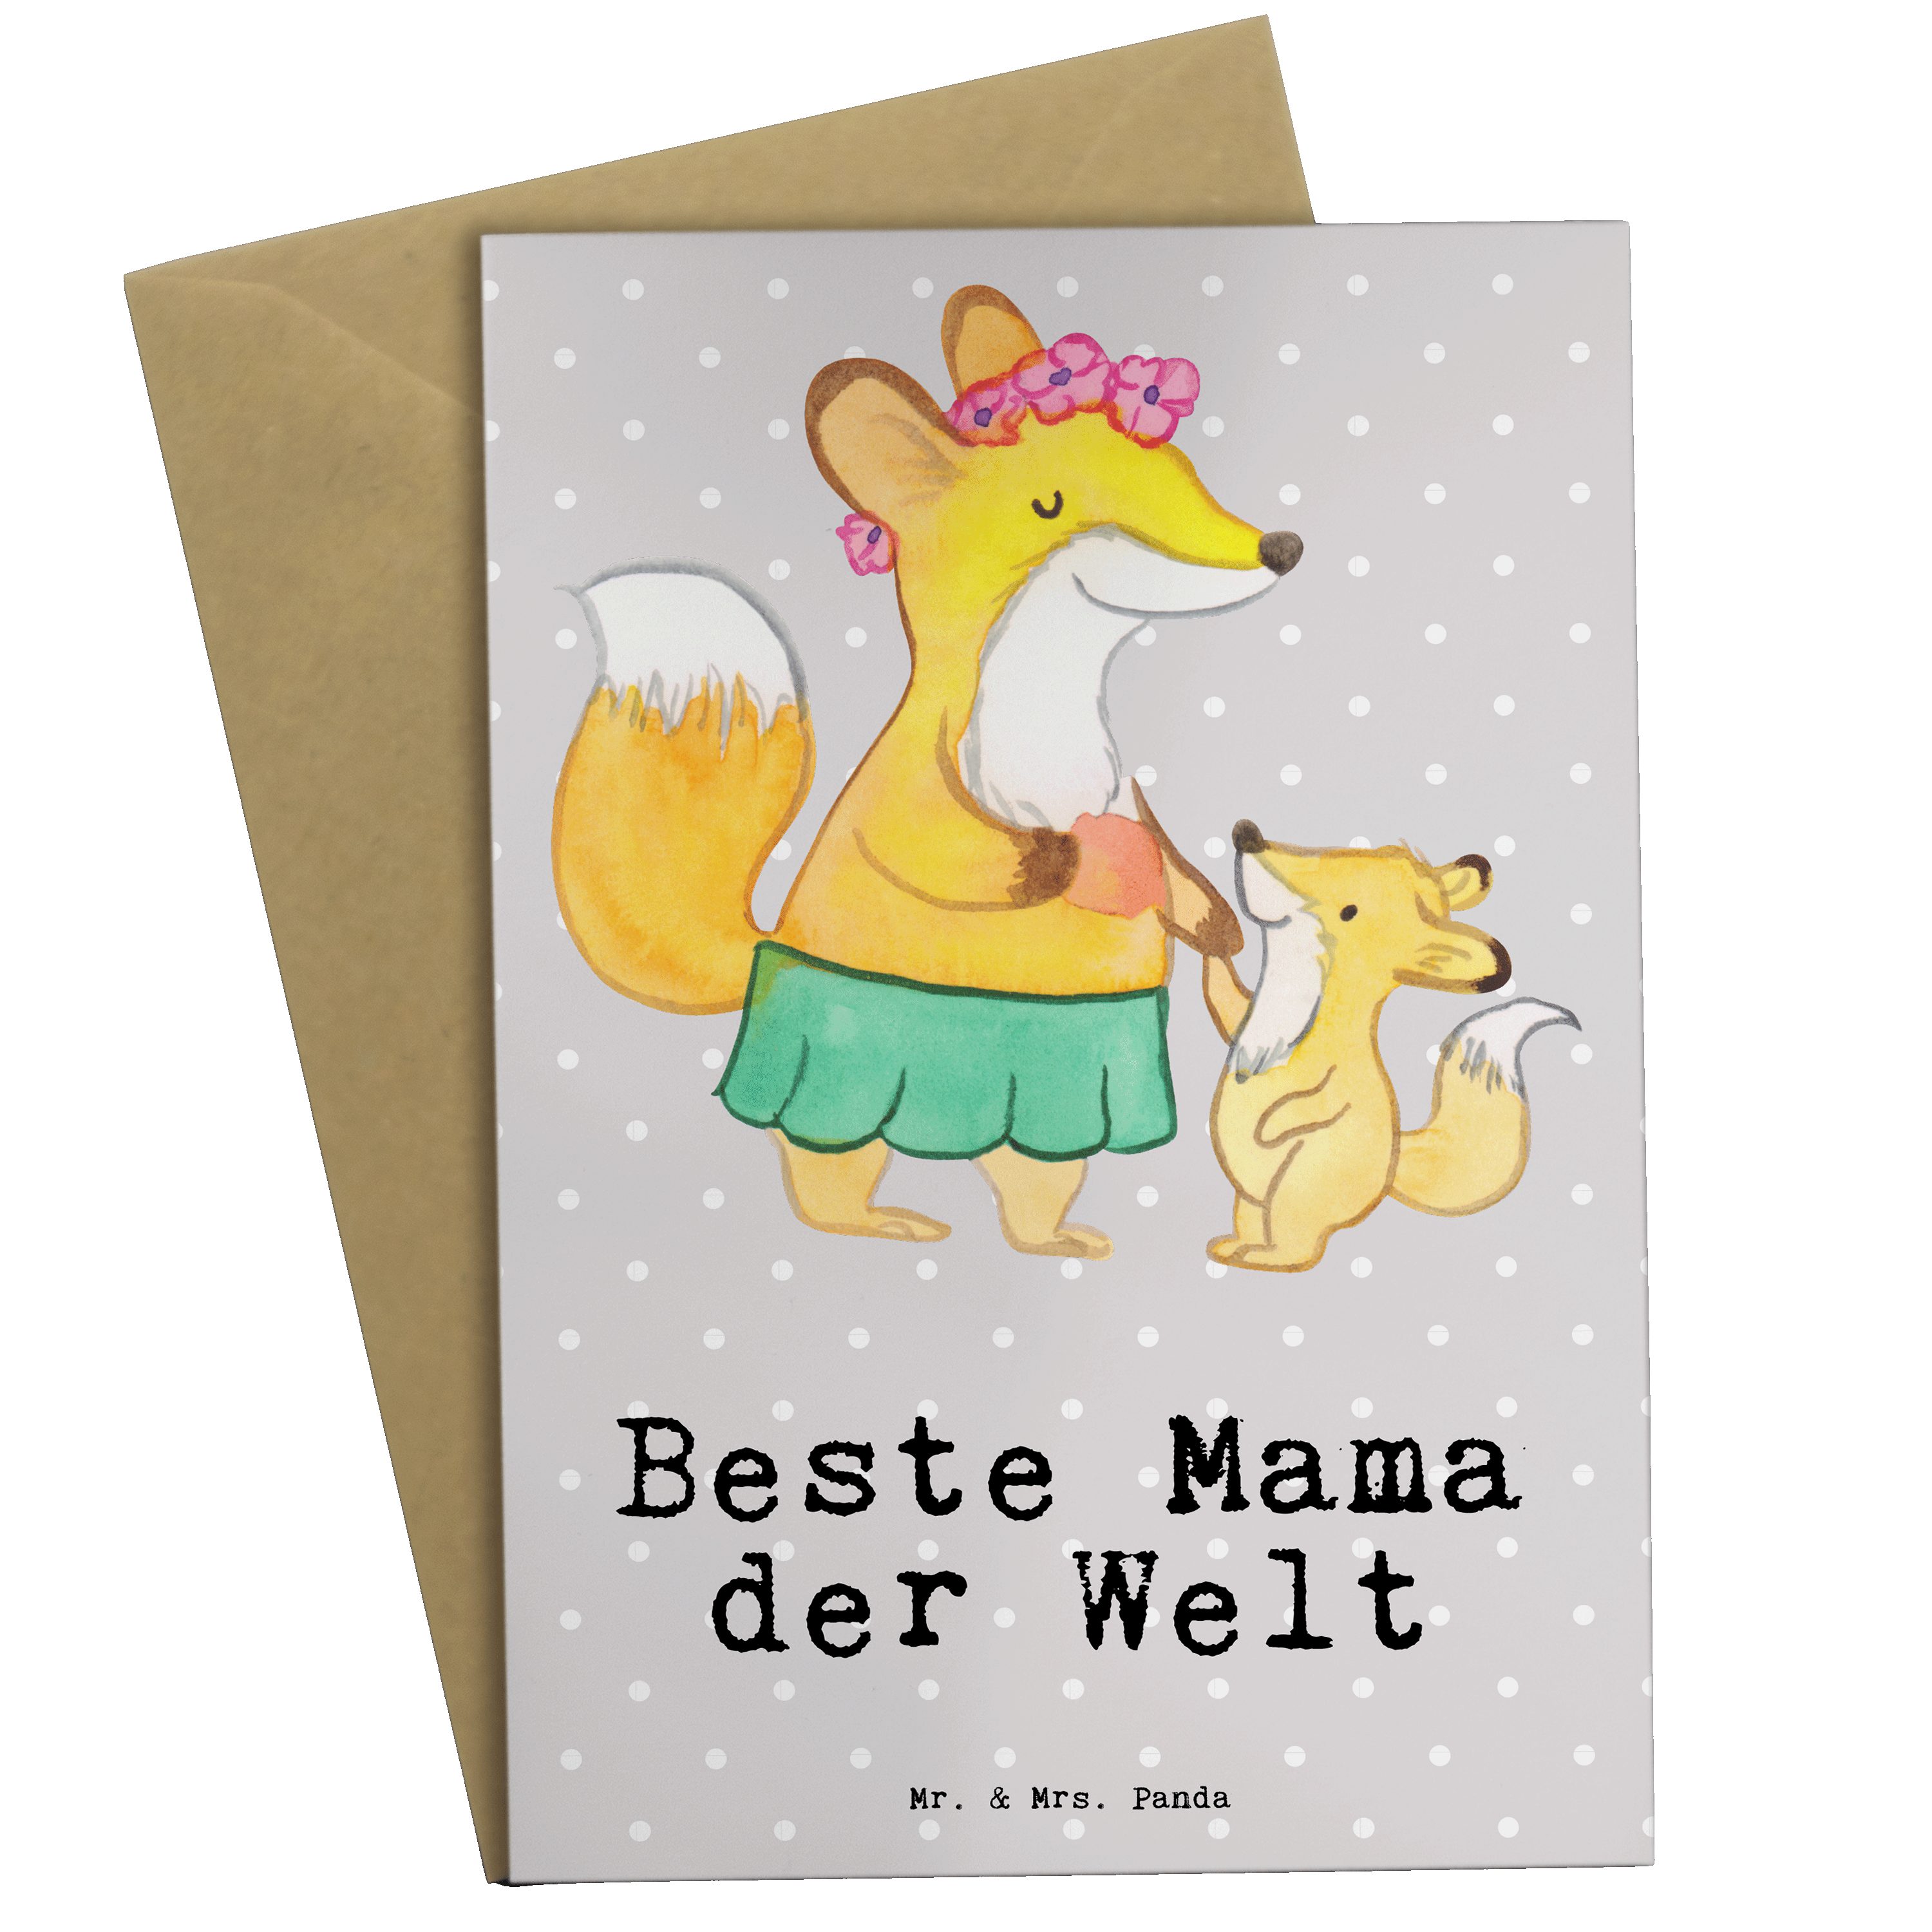 Mr. & Mrs. Panda Grußkarte Fuchs Beste Mama der Welt - Grau Pastell - Geschenk, Hochzeitskarte